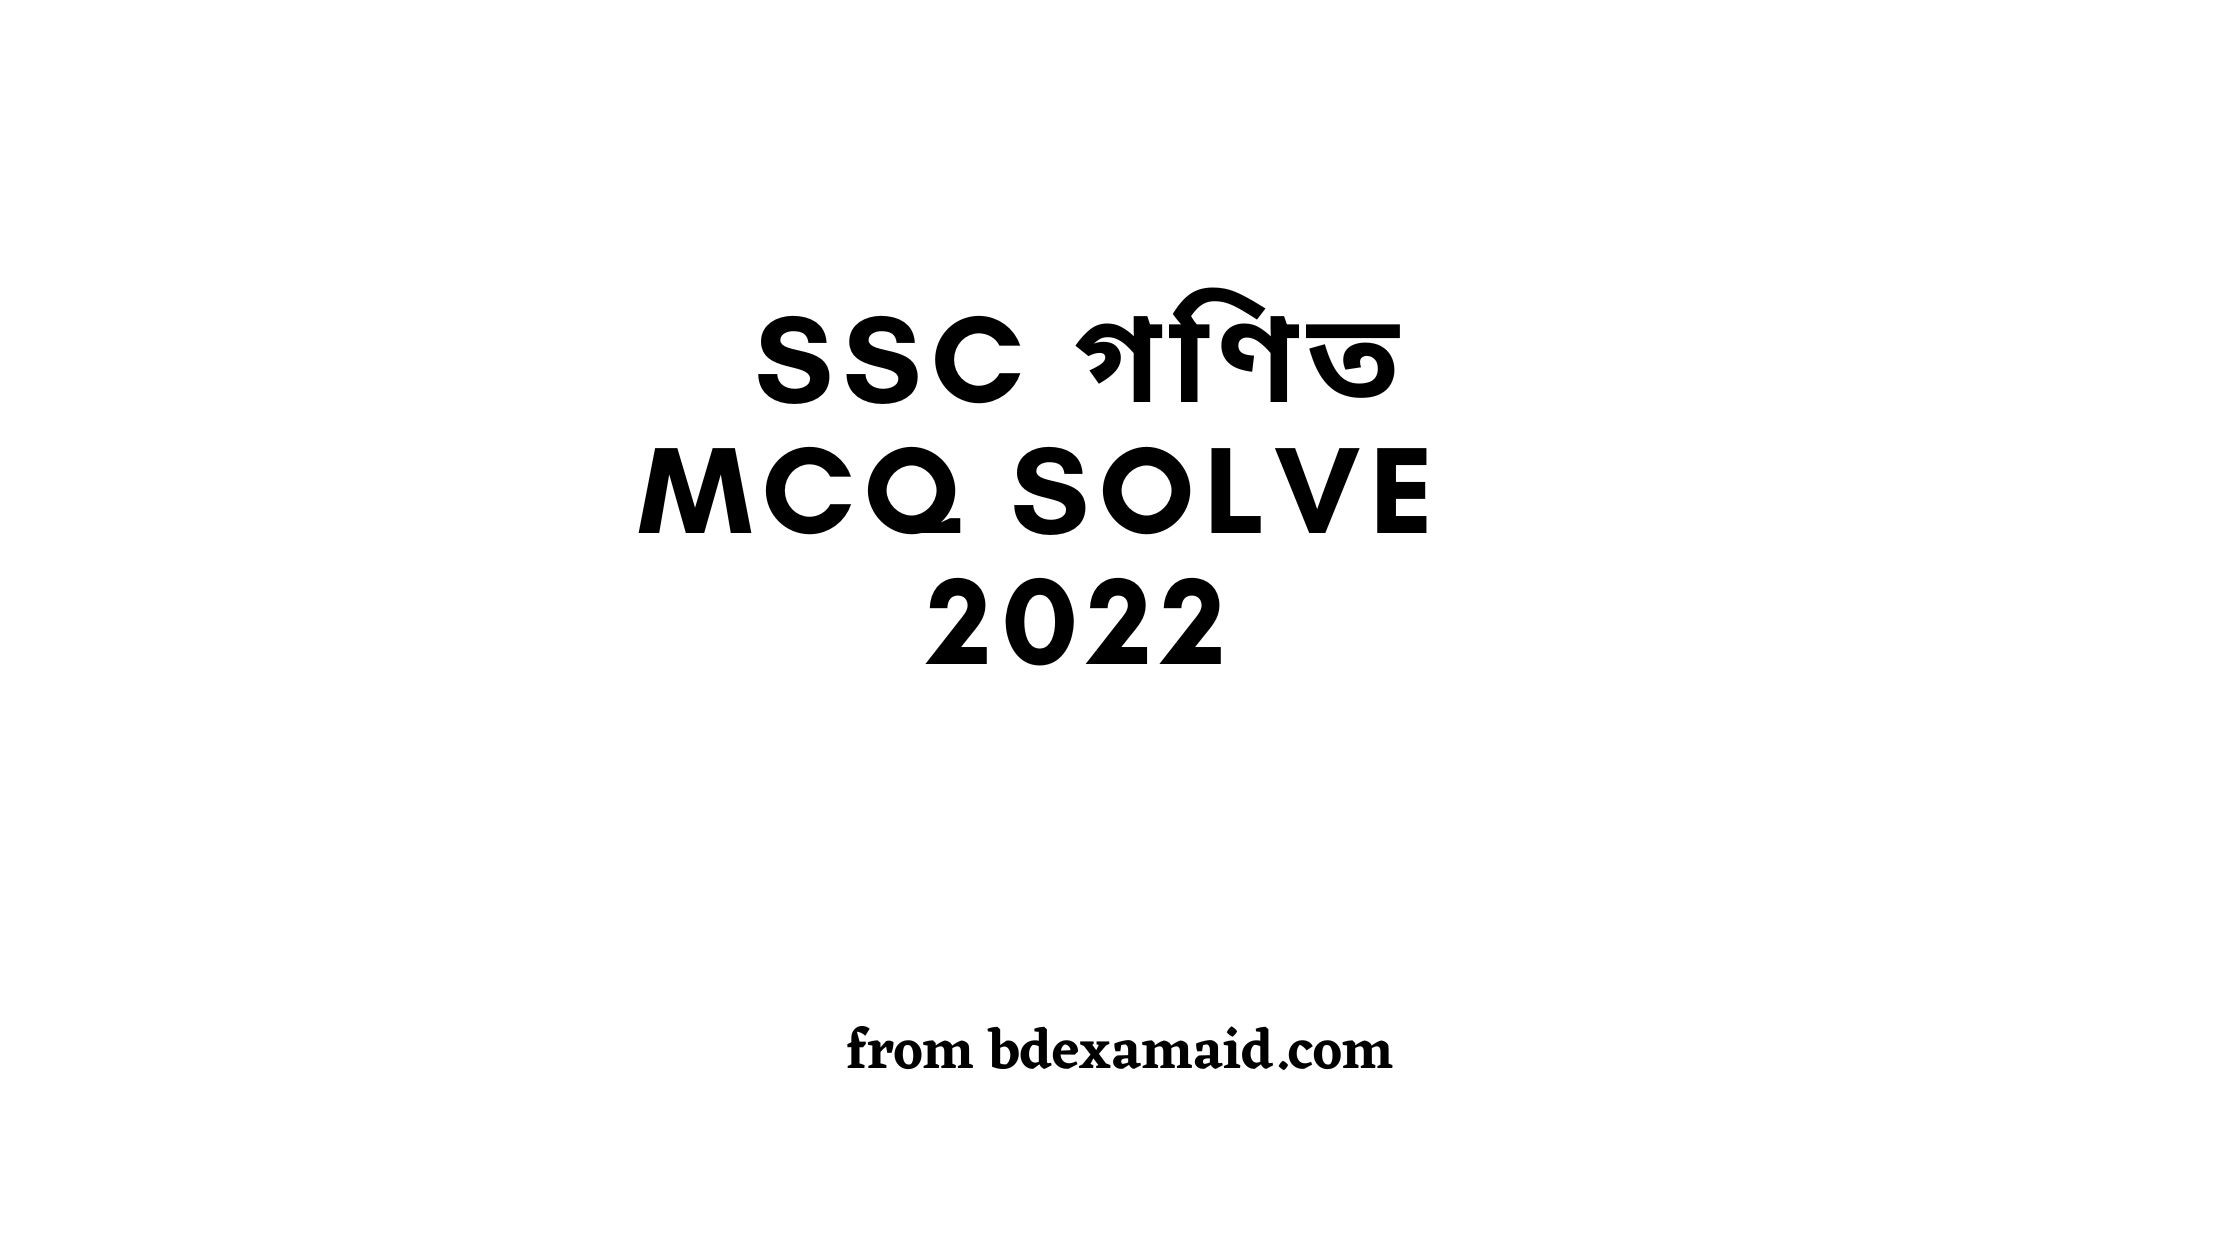 SSC Math MCQ solution 2022